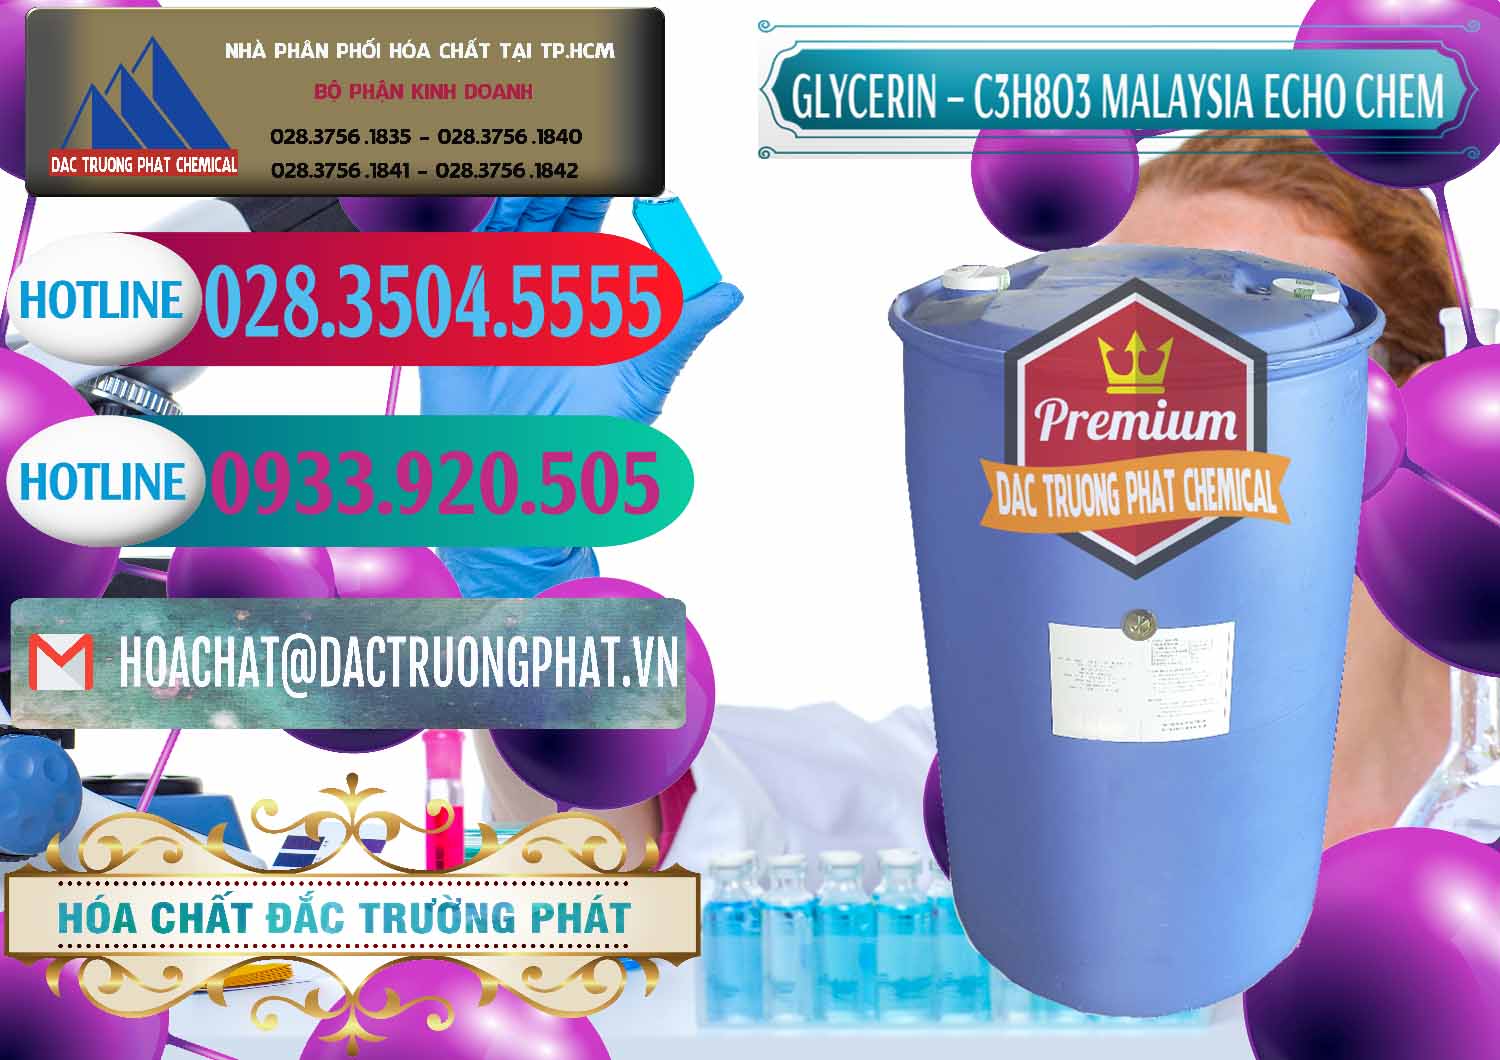 Nơi chuyên nhập khẩu & bán C3H8O3 - Glycerin 99.7% Echo Chem Malaysia - 0273 - Công ty nhập khẩu _ cung cấp hóa chất tại TP.HCM - truongphat.vn